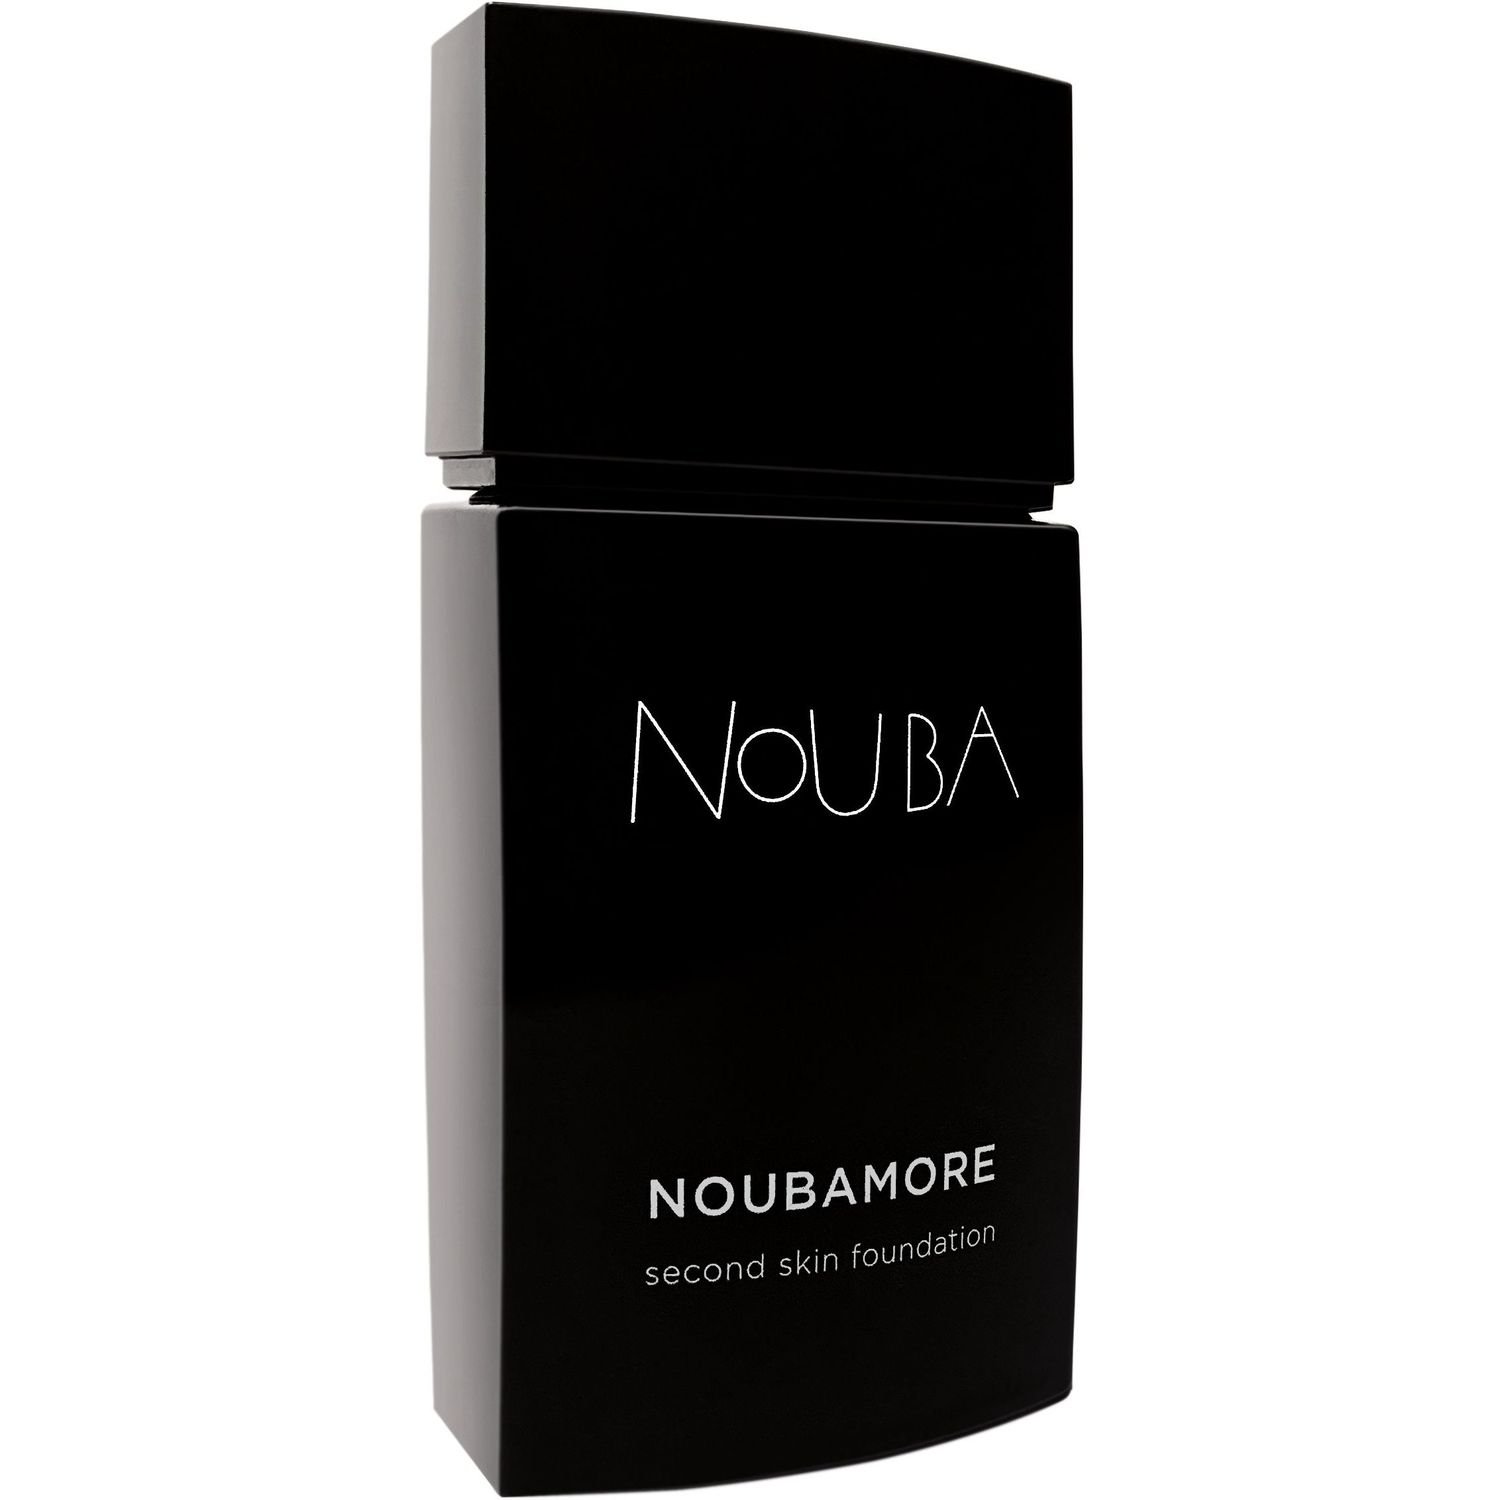 Тональная основа Nouba Noubamore Second Skin тон 82, 30 мл - фото 1